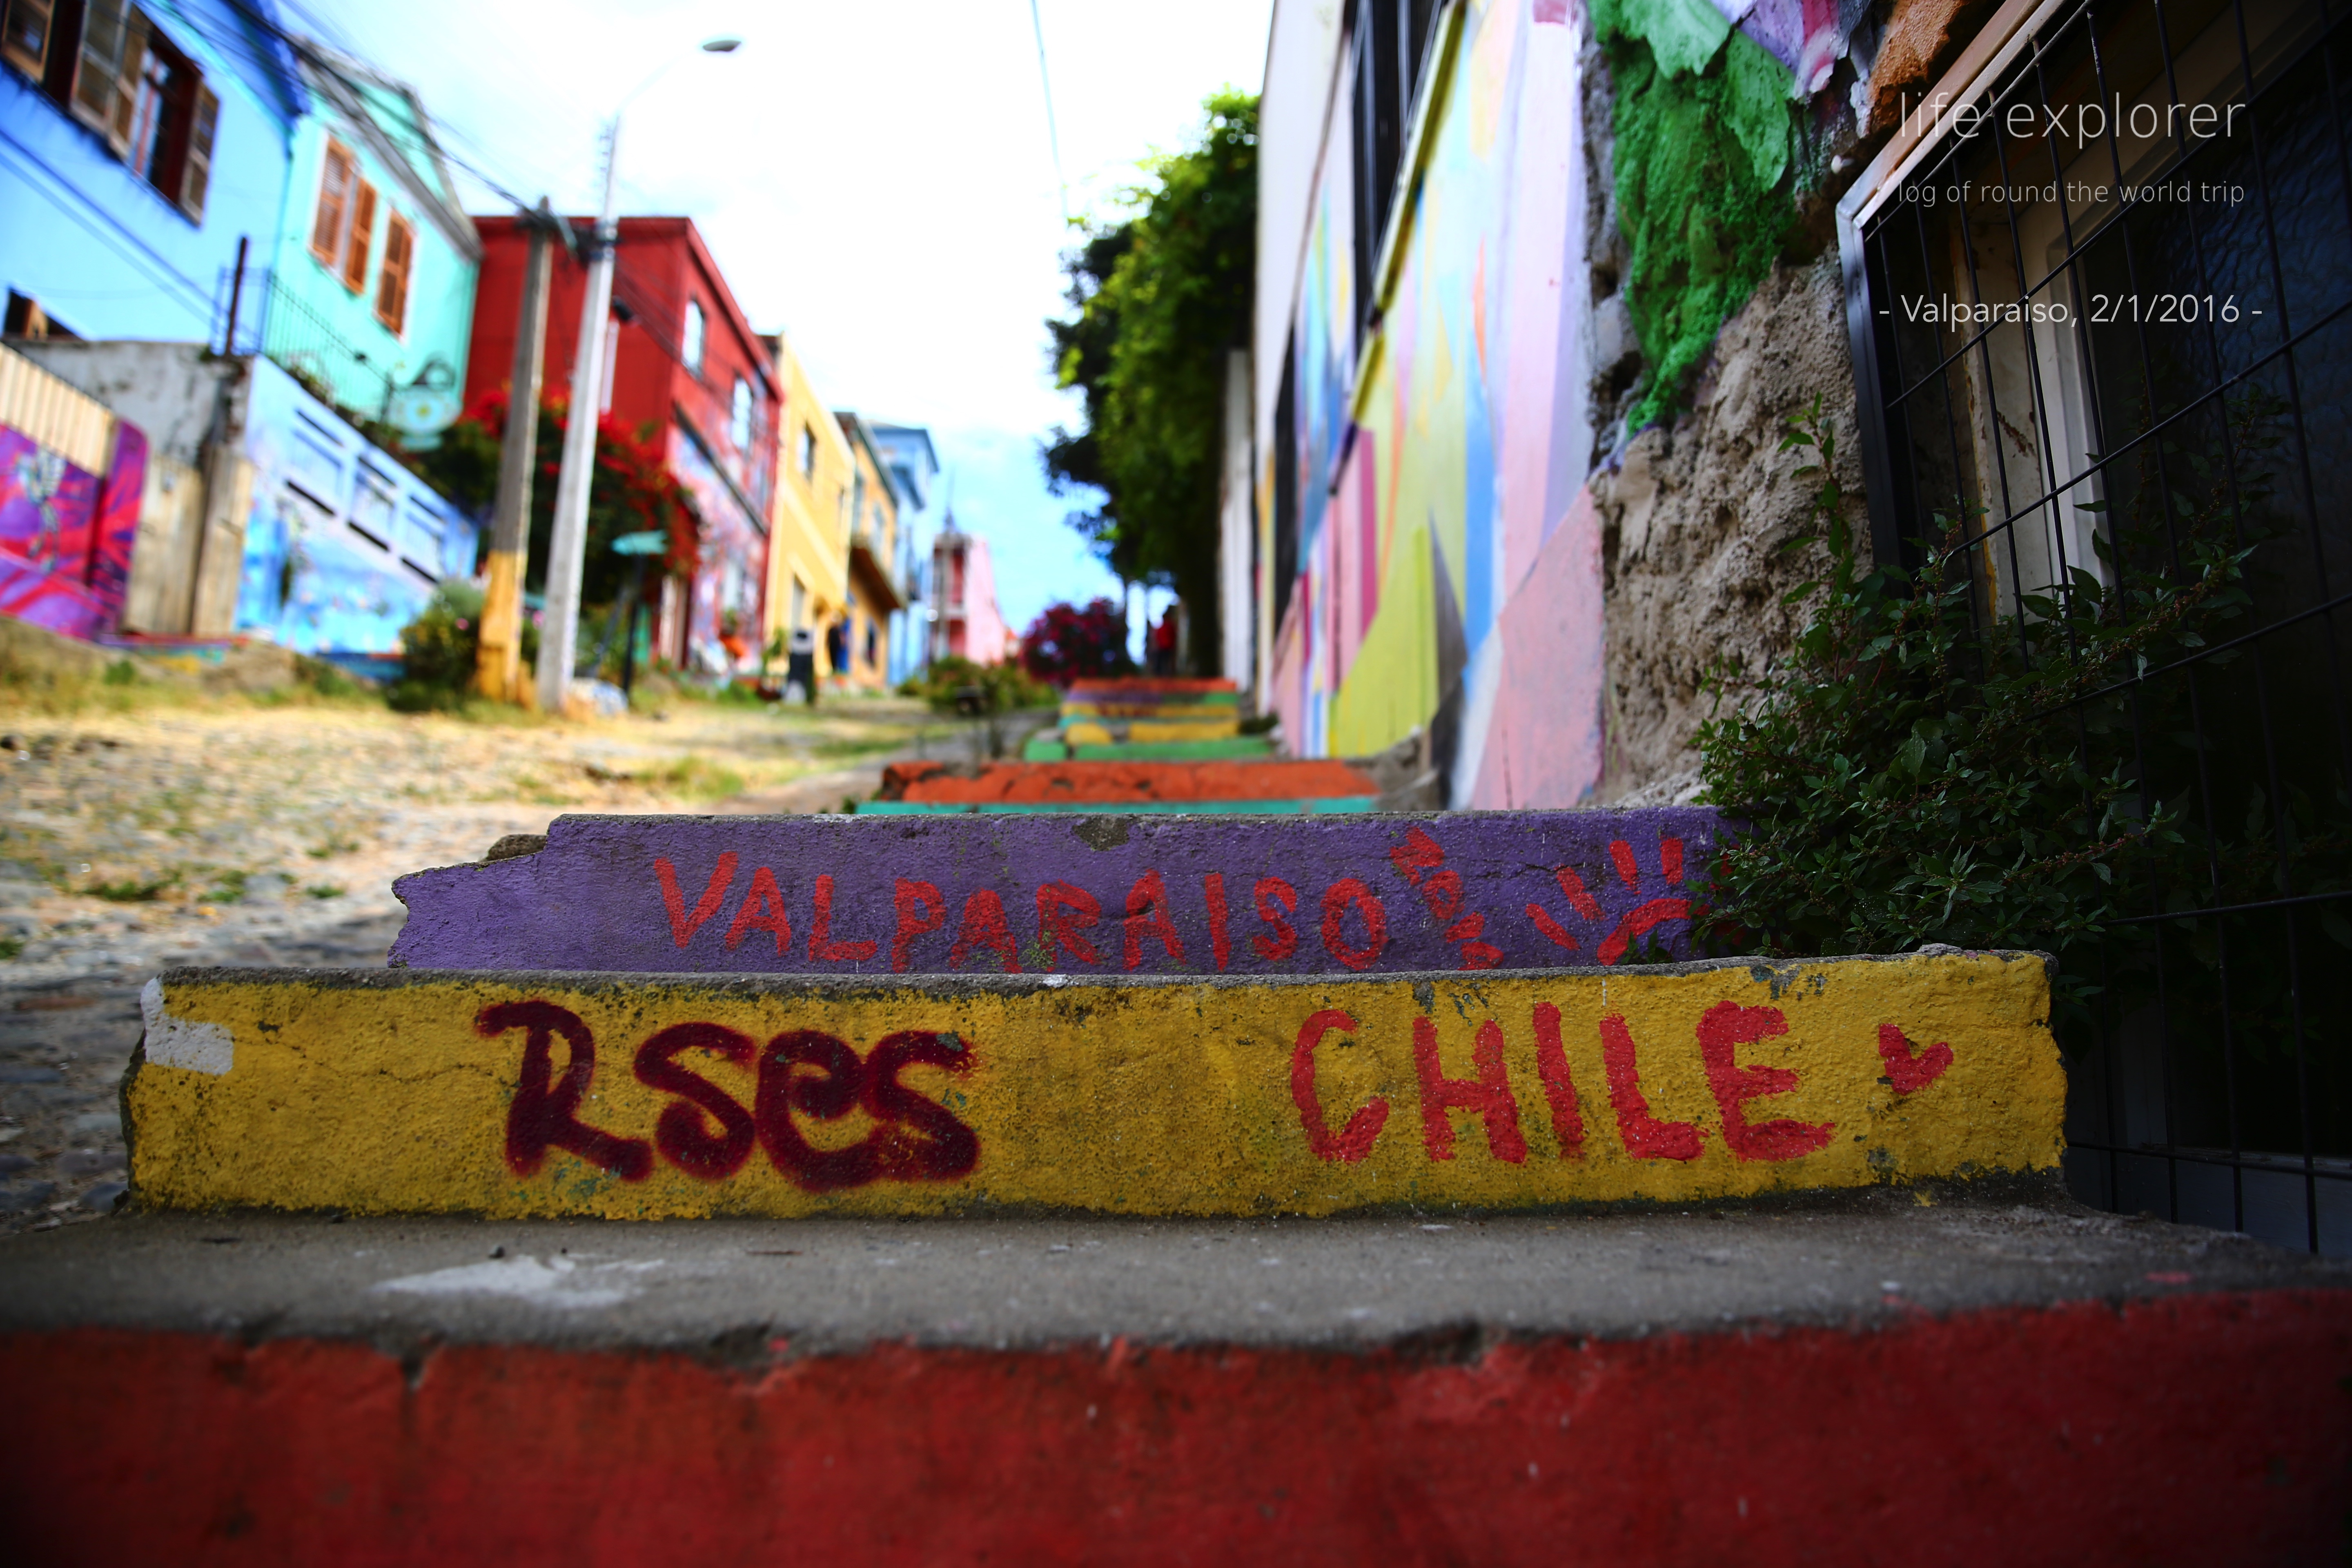 #36 世界で最も落書きだらけの街 「バルパライソ」- The World’s Most Graffiti-covered City “Valparaíso”